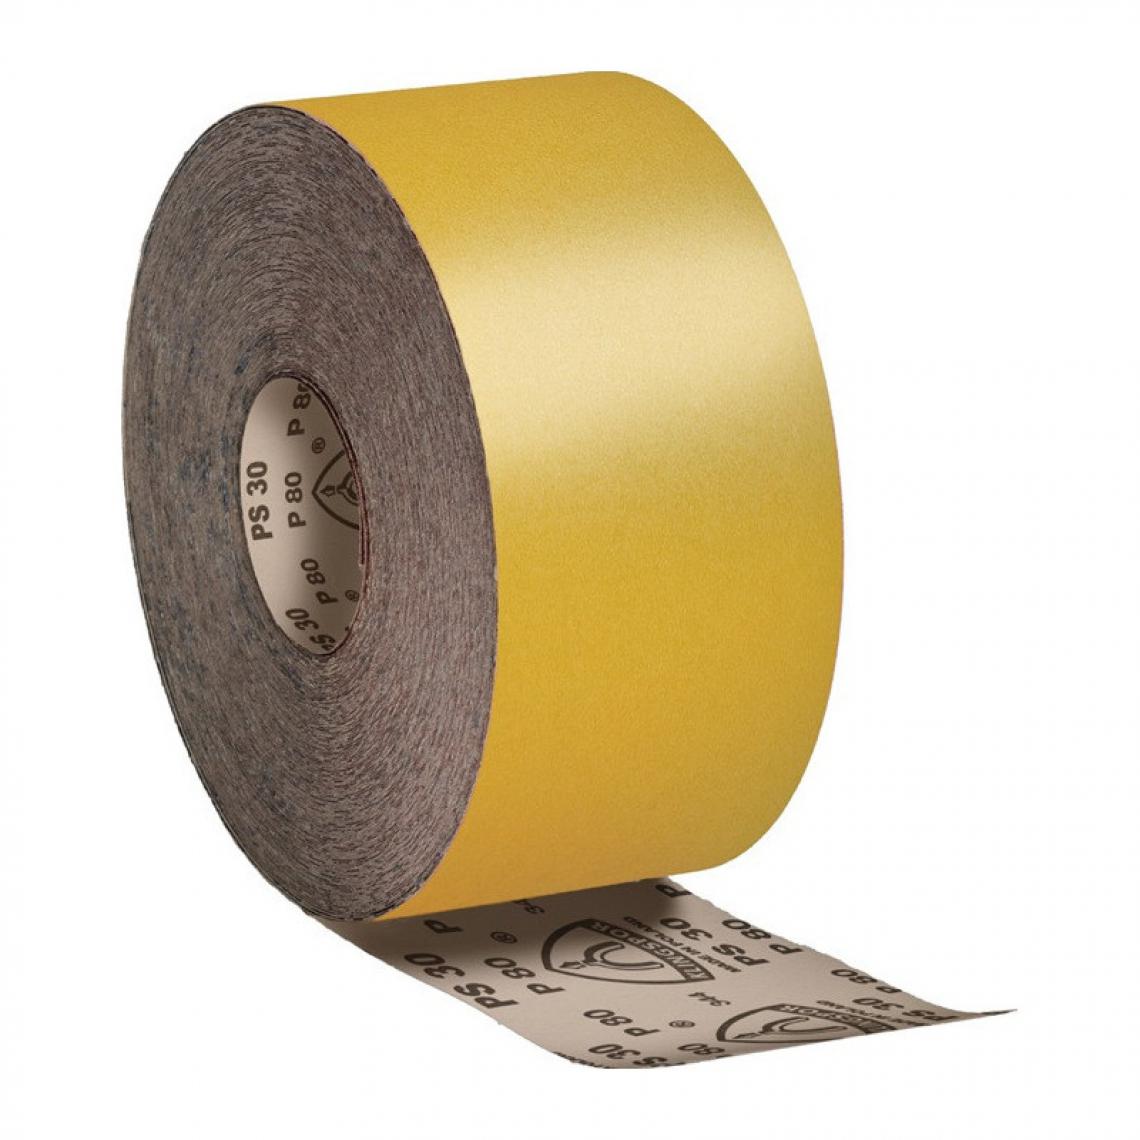 Klingspor - Rouleau de tissu abrasif PS 30 D 115 mm granulation 150 pour vernis/peinture/app - Abrasifs et brosses